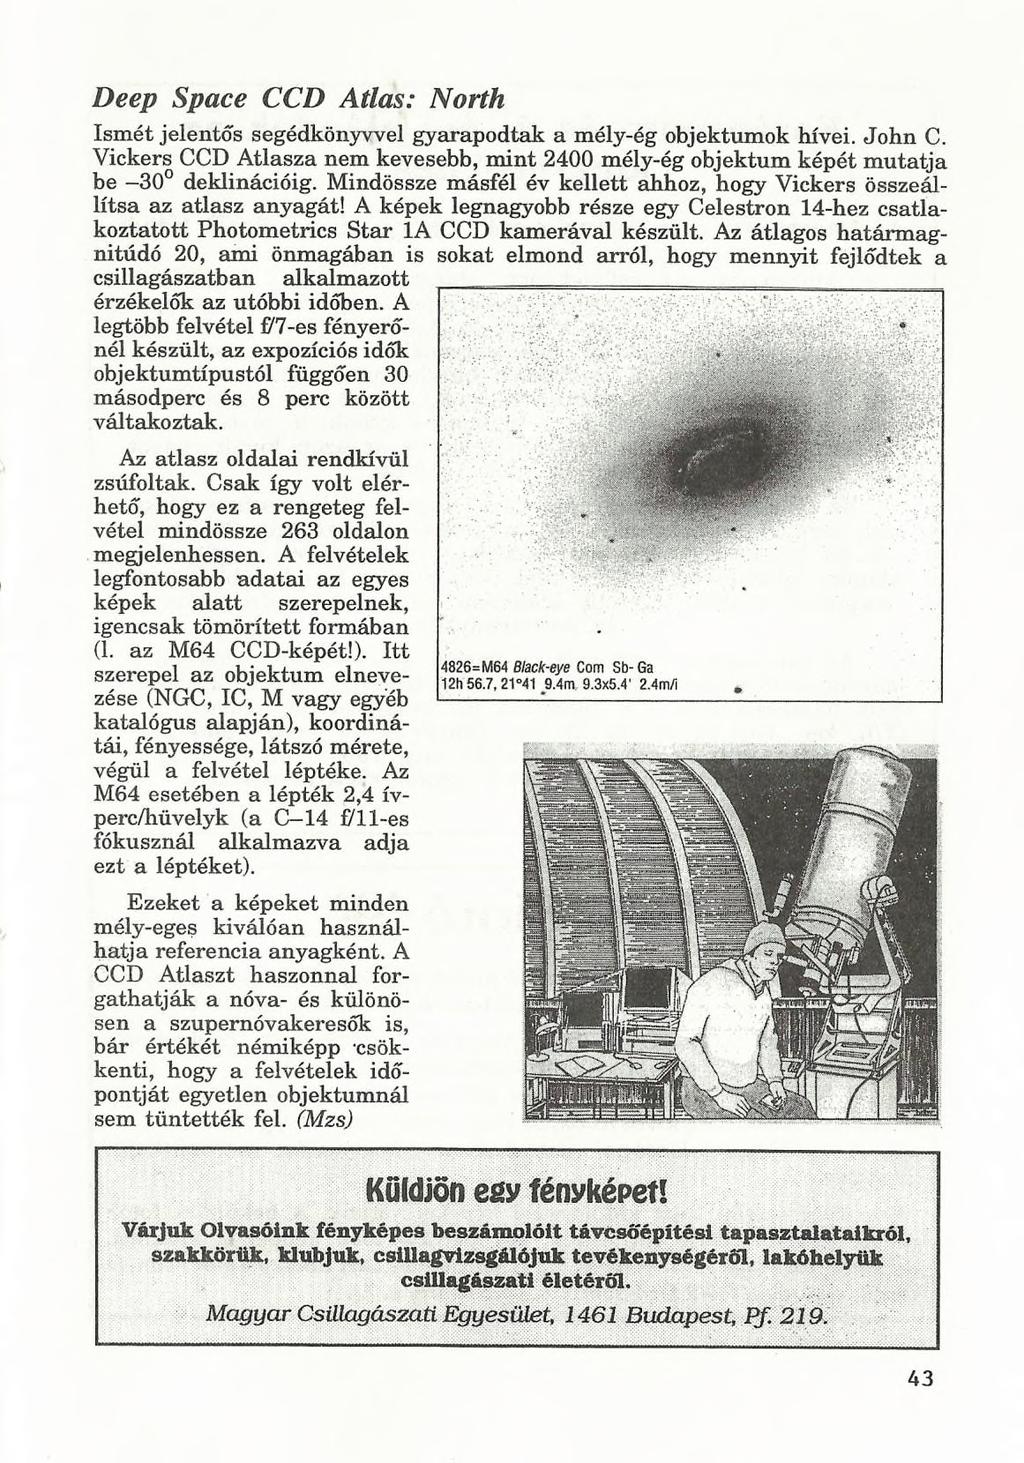 Ismét jelentős segédkönyvvel gyarapodtak a mély-ég objektumok hívei. John C. Vickers CCD Atlasza nem kevesebb, mint 2400 mély-ég objektum képét mutatja be -30 deklinációig.